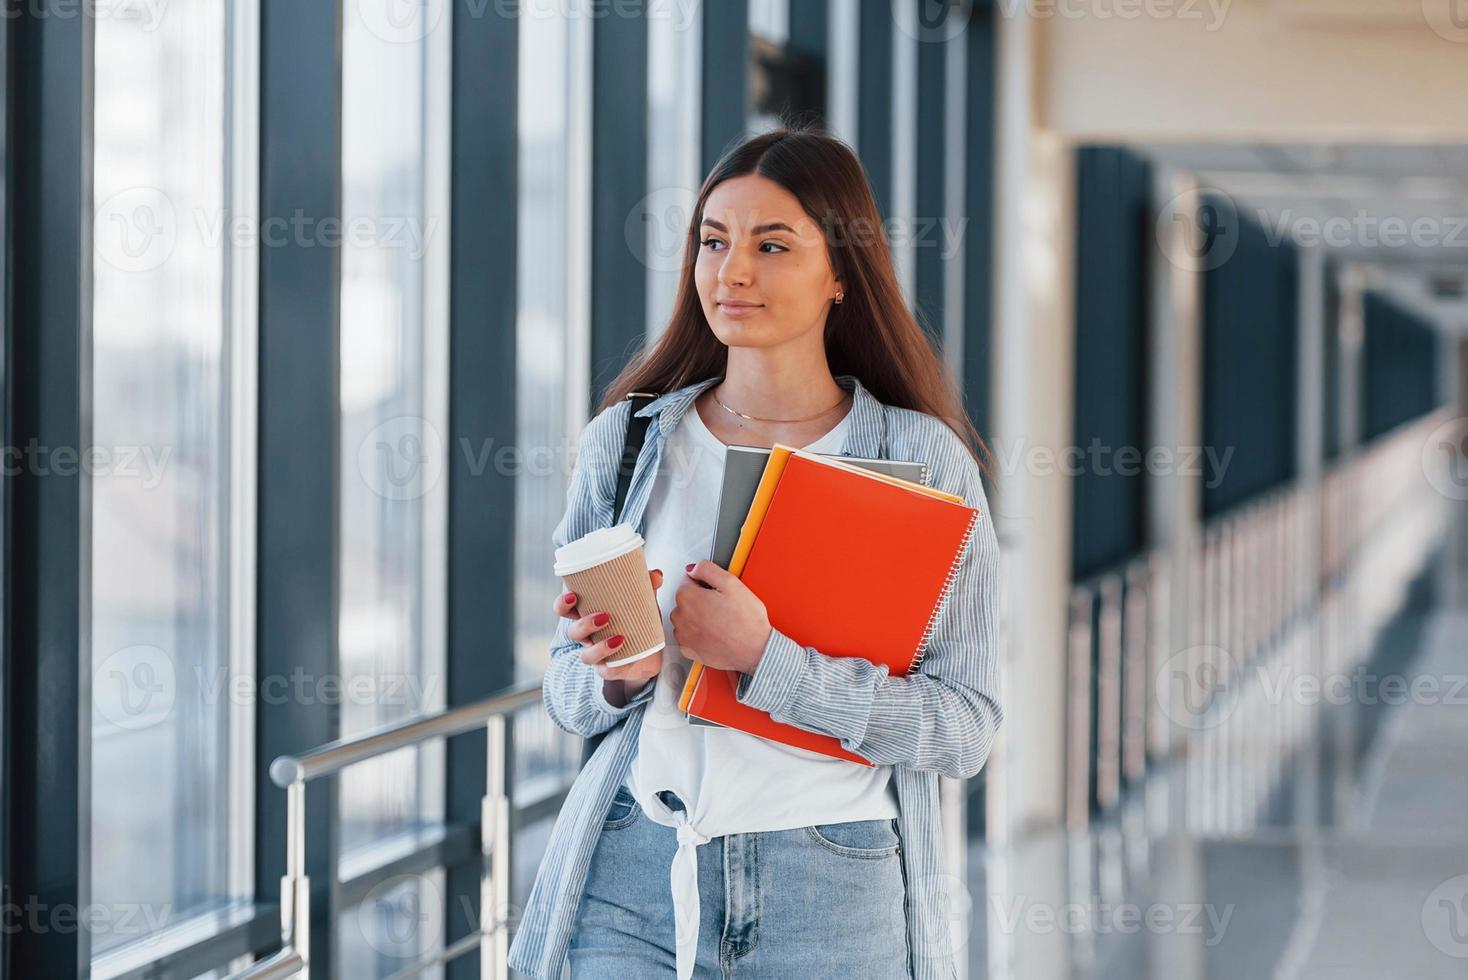 aluna jovem está no corredor de uma faculdade segurando blocos de notas e copo de bebida foto